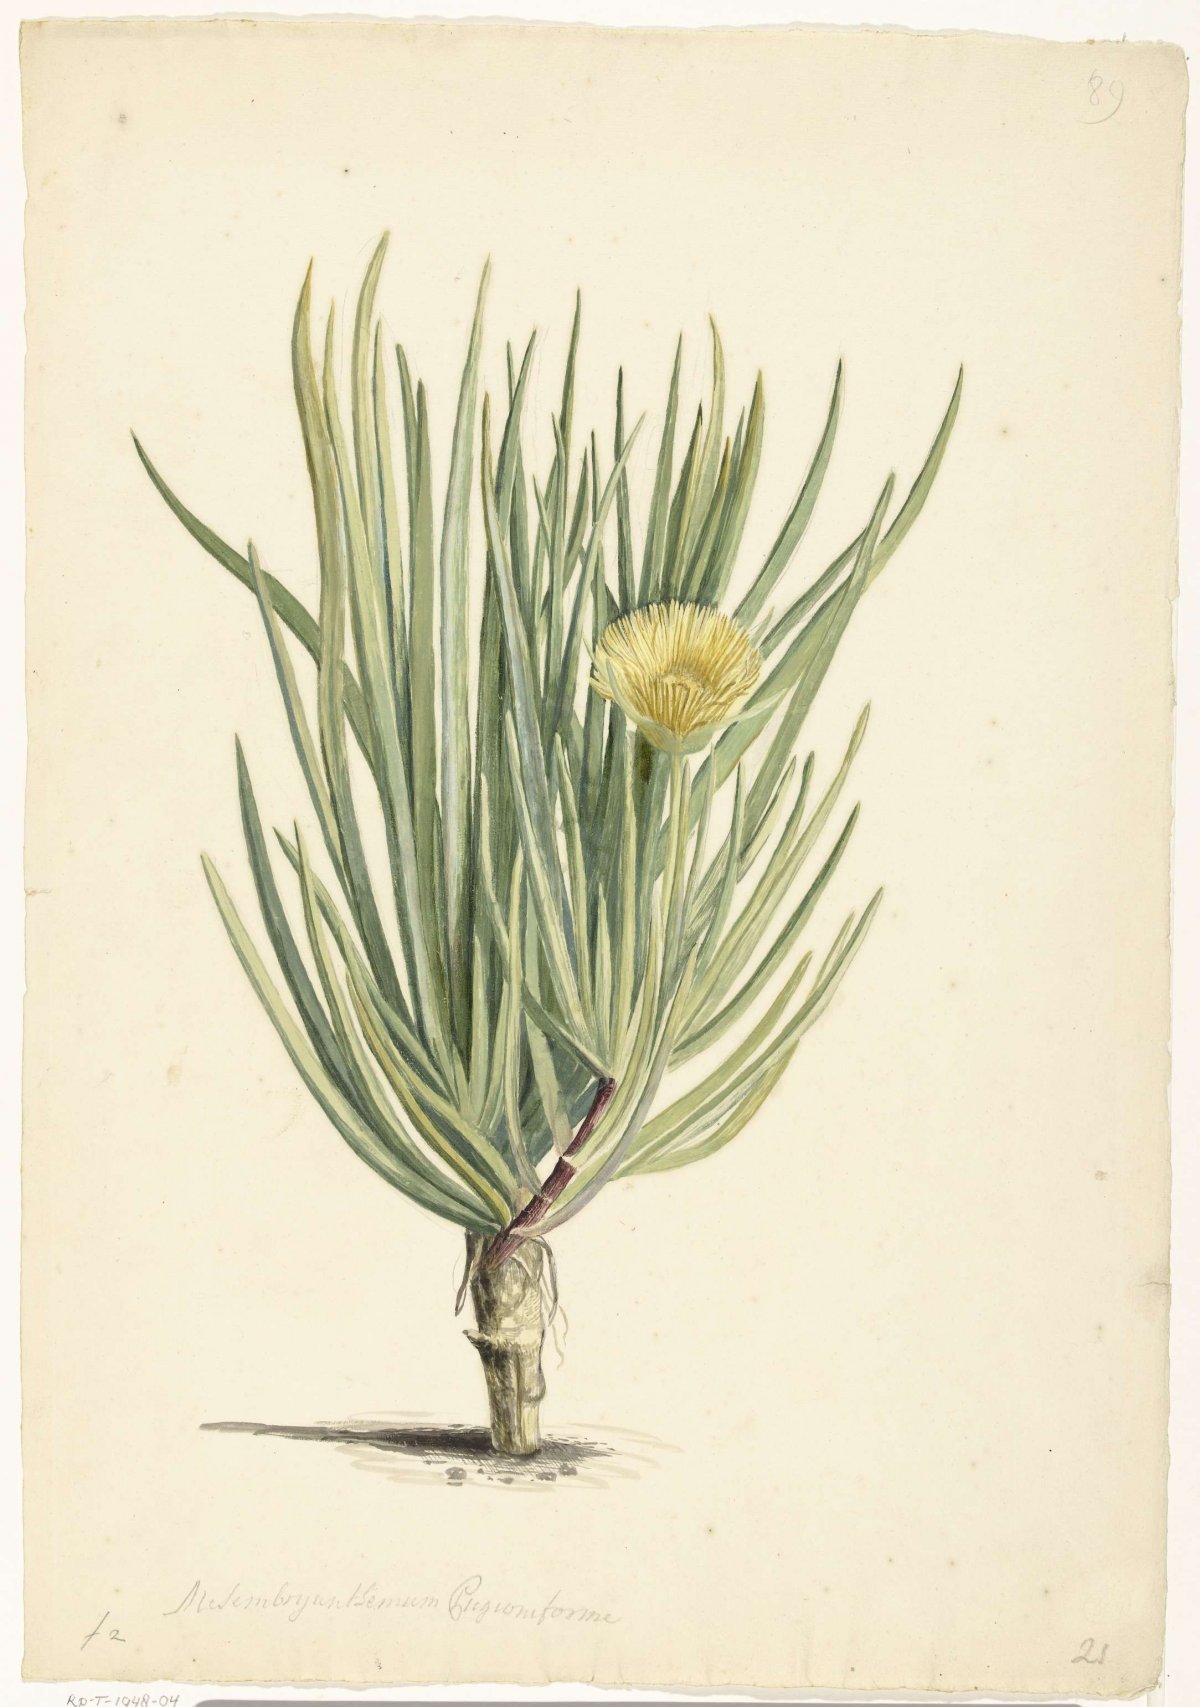 Narrow-leaved Iceplant in Bloom, Laurens Vincentsz. van der Vinne, 1668 - 1729